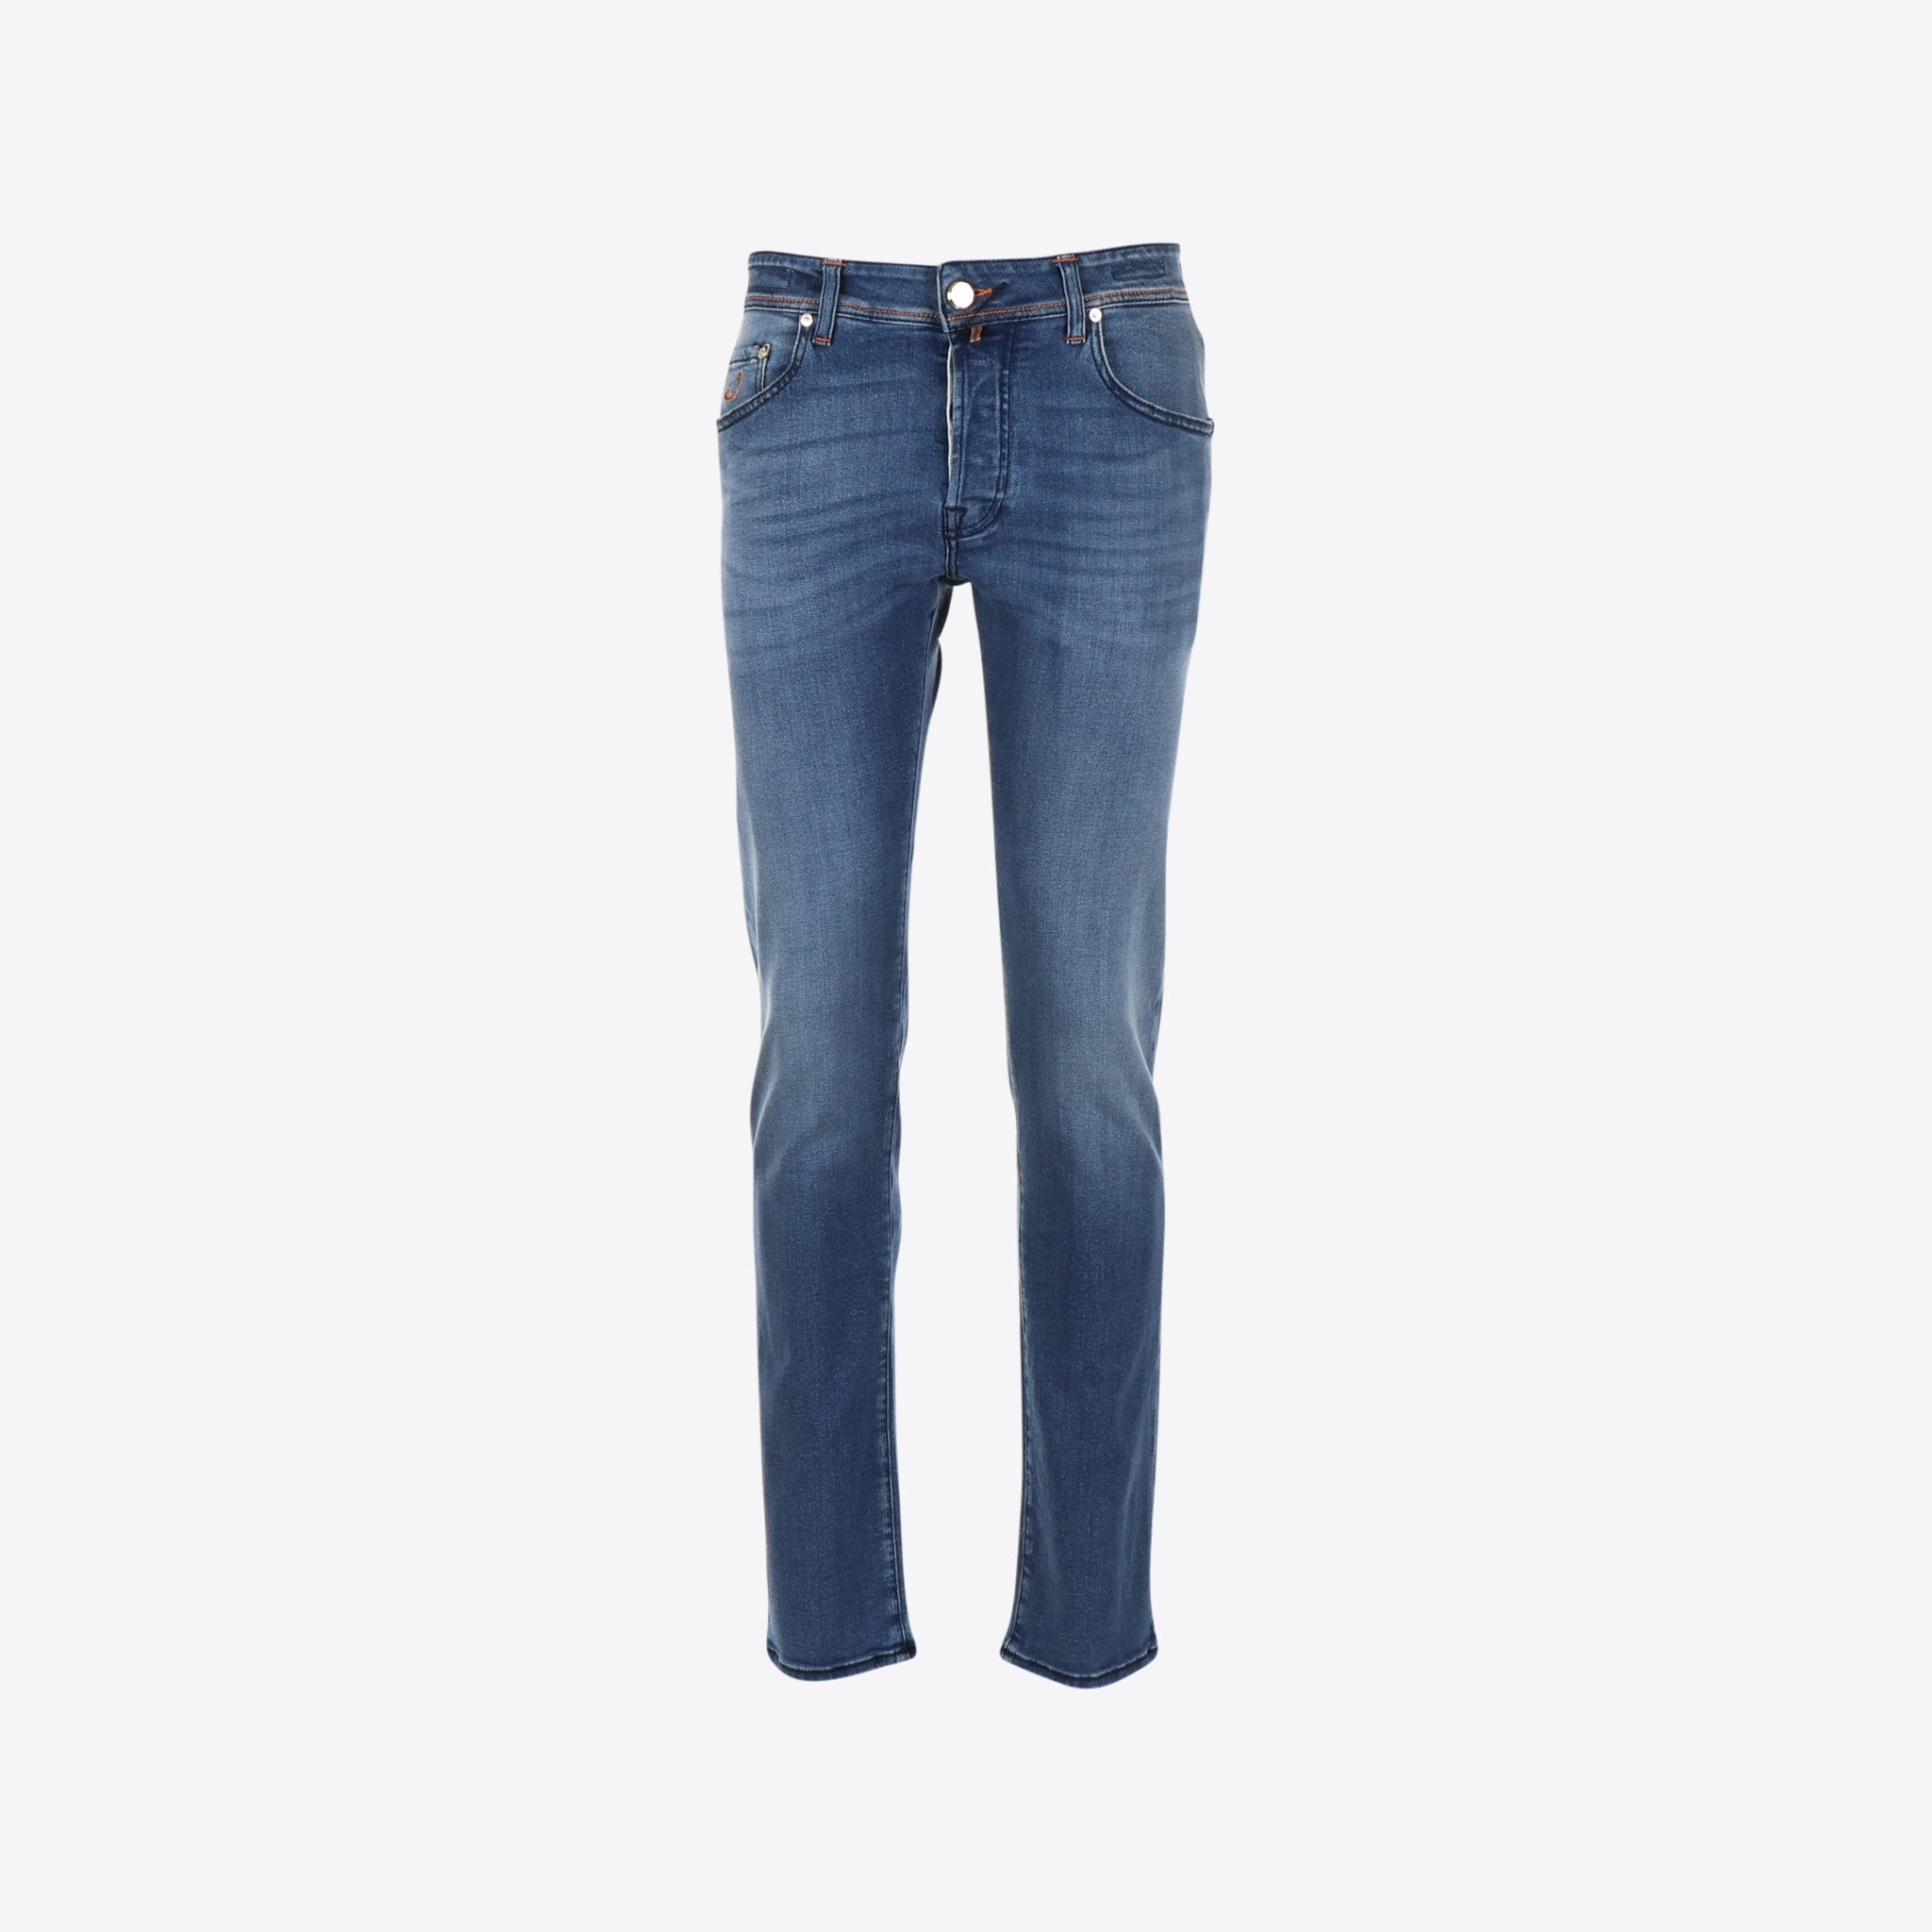 Jeans Blauw Ltd